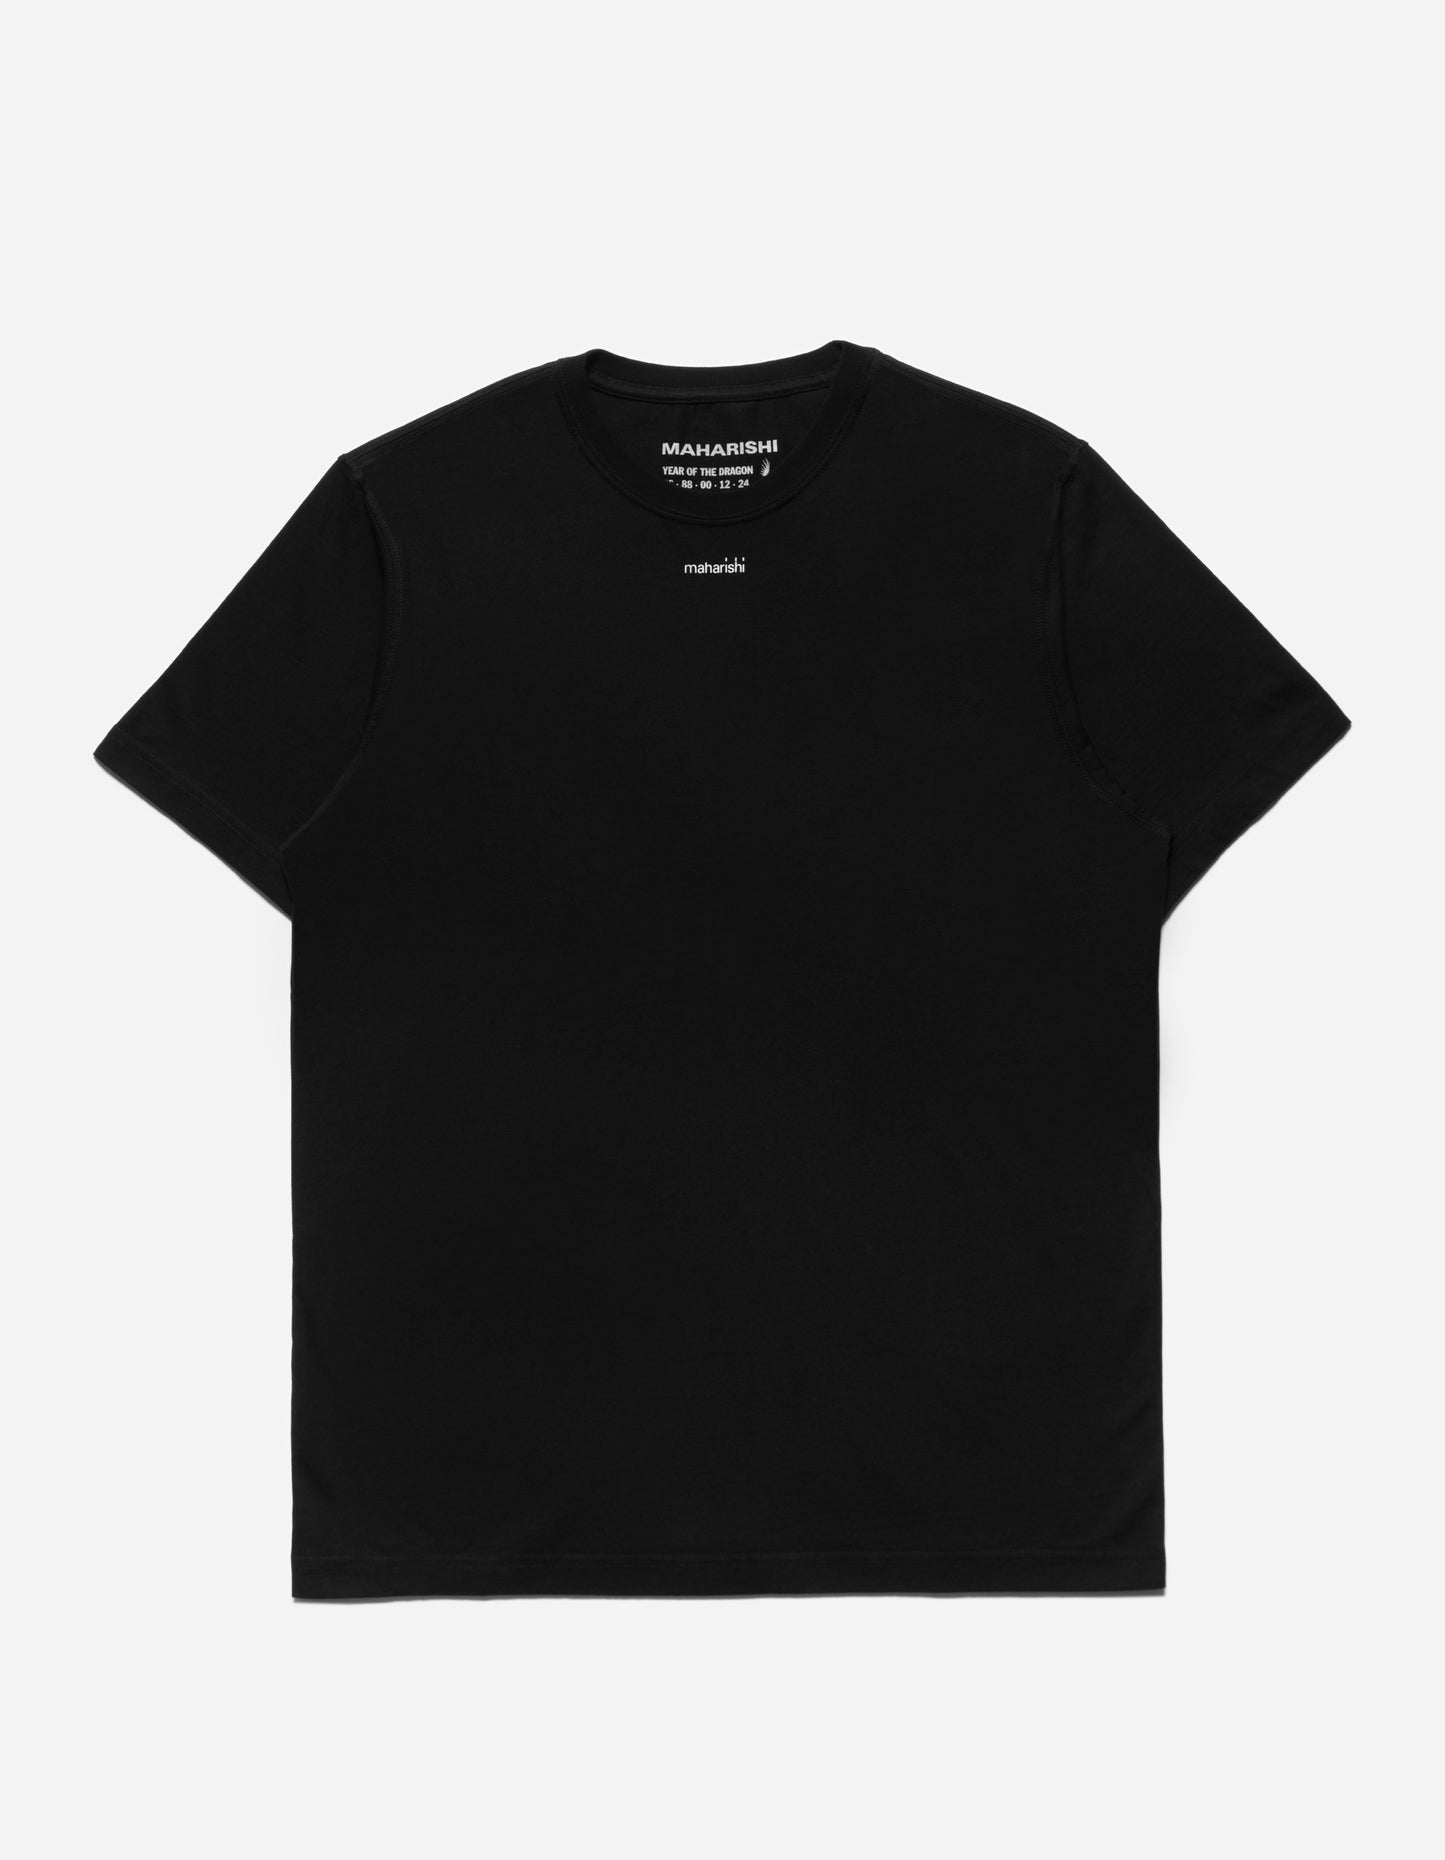 1307 Micro Maharishi T-Shirt Black